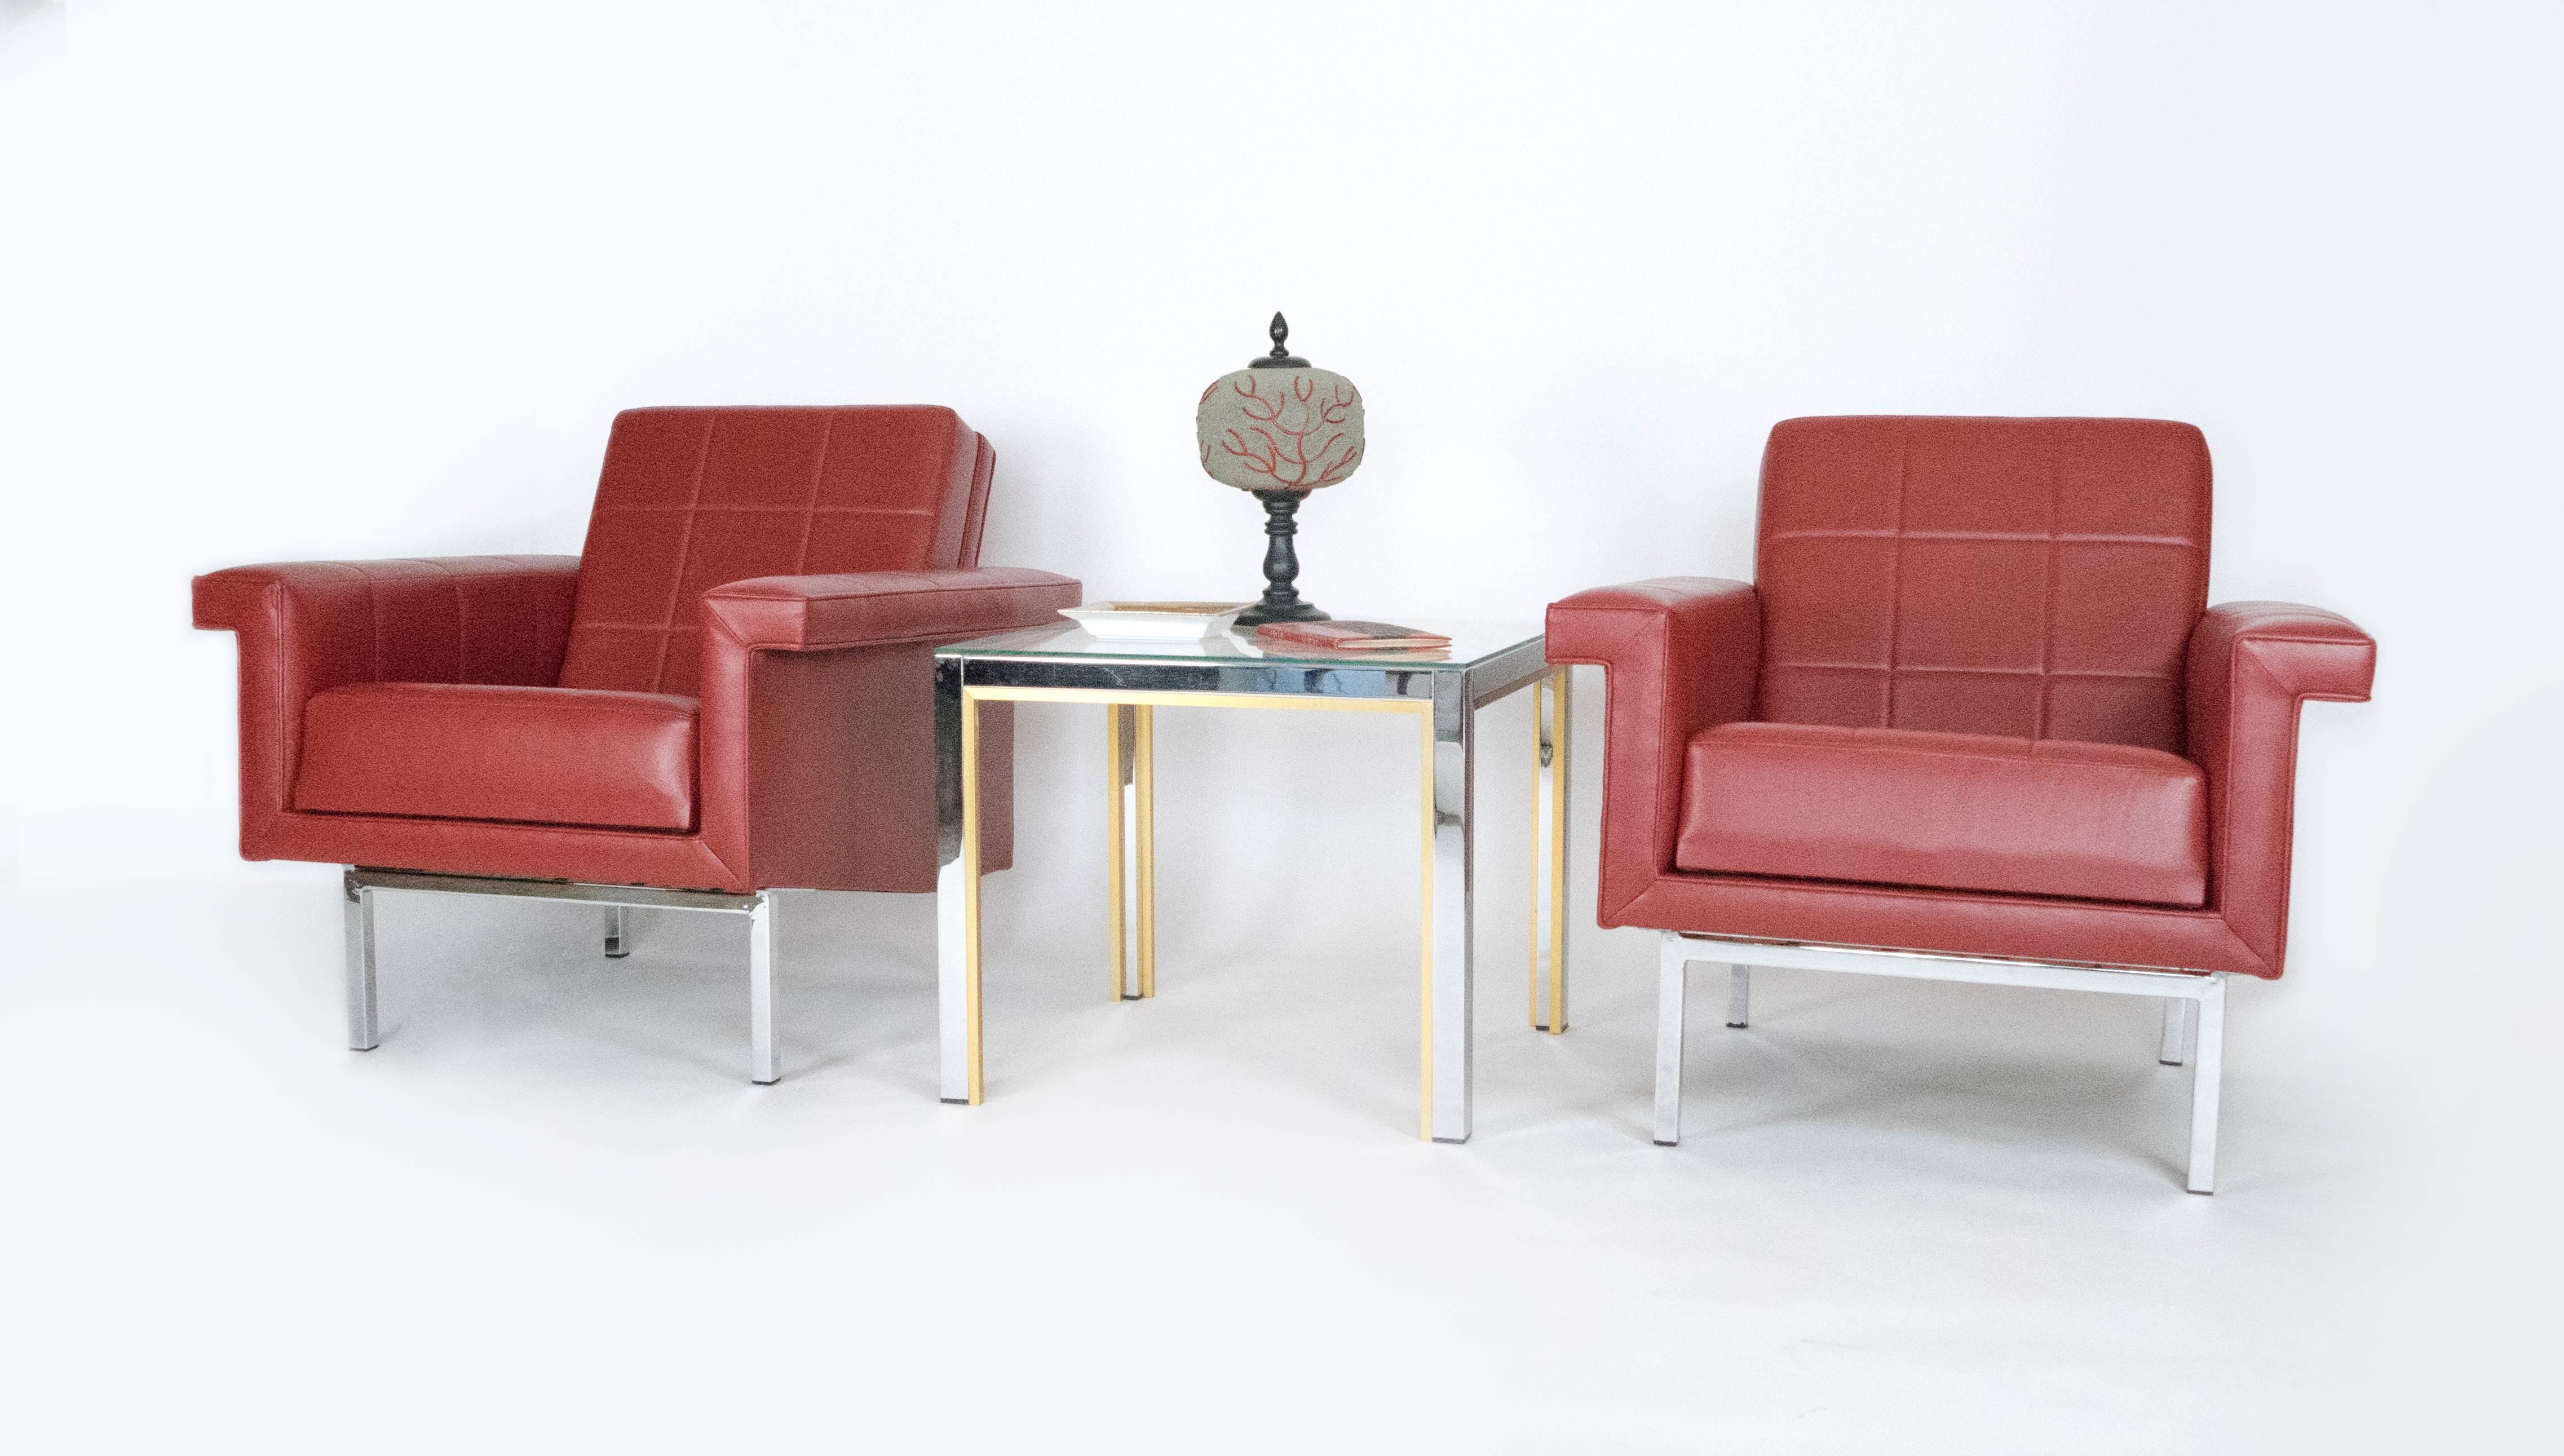 Die Linien dieser tief sitzenden Sessel sind klar und modern, die Stühle sind sehr bequem. Das gesteppte Design und die verchromten, kantigen Beine erinnern an das französische Design der 1970er Jahre. Diese Sessel sind mit einem chilifarbenen Leder